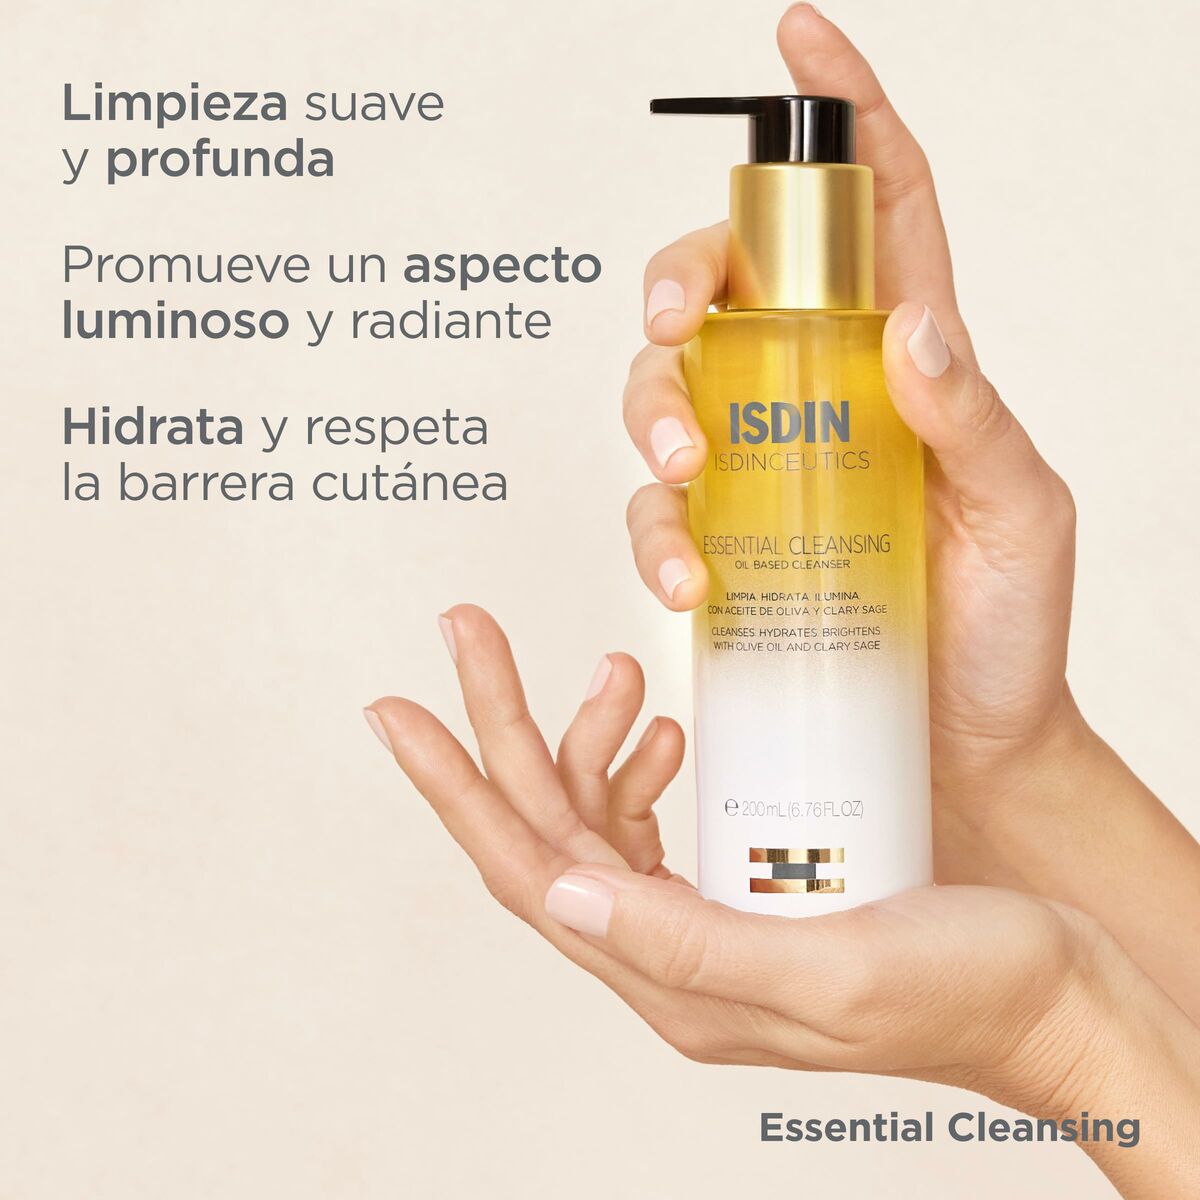 Kaufe Kosmetik-Set Isdin Isdinceutics Anti-Aging 4 Stk. bei AWK Flagship um € 68.00